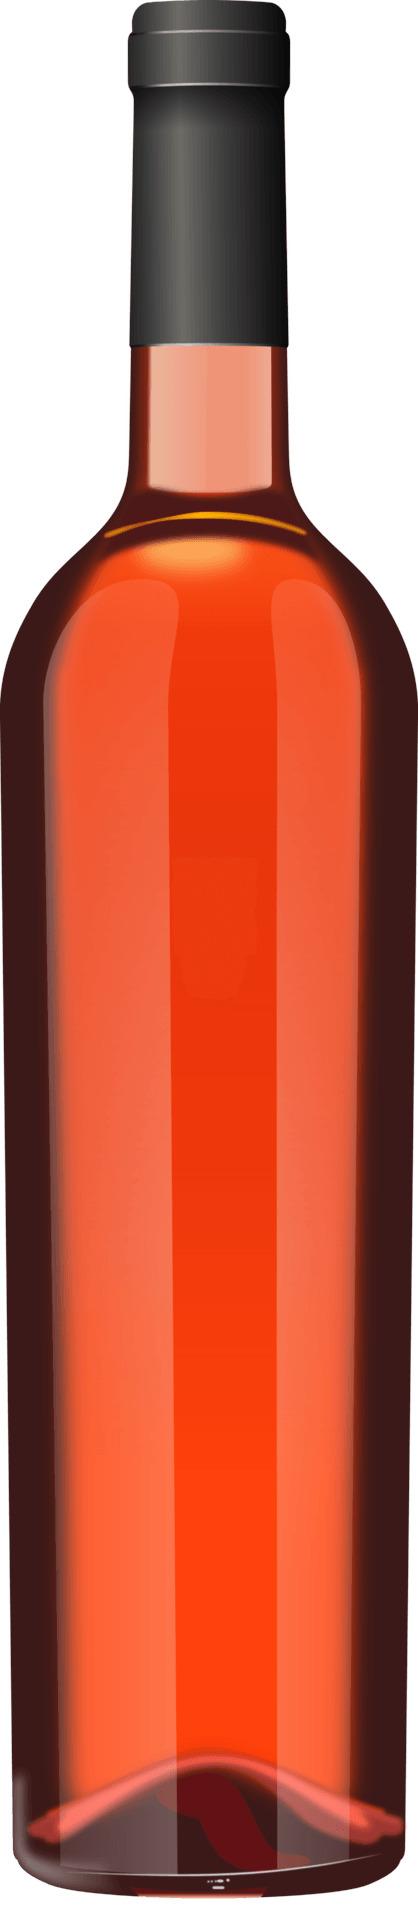 Rose Wine Bottle png transparent